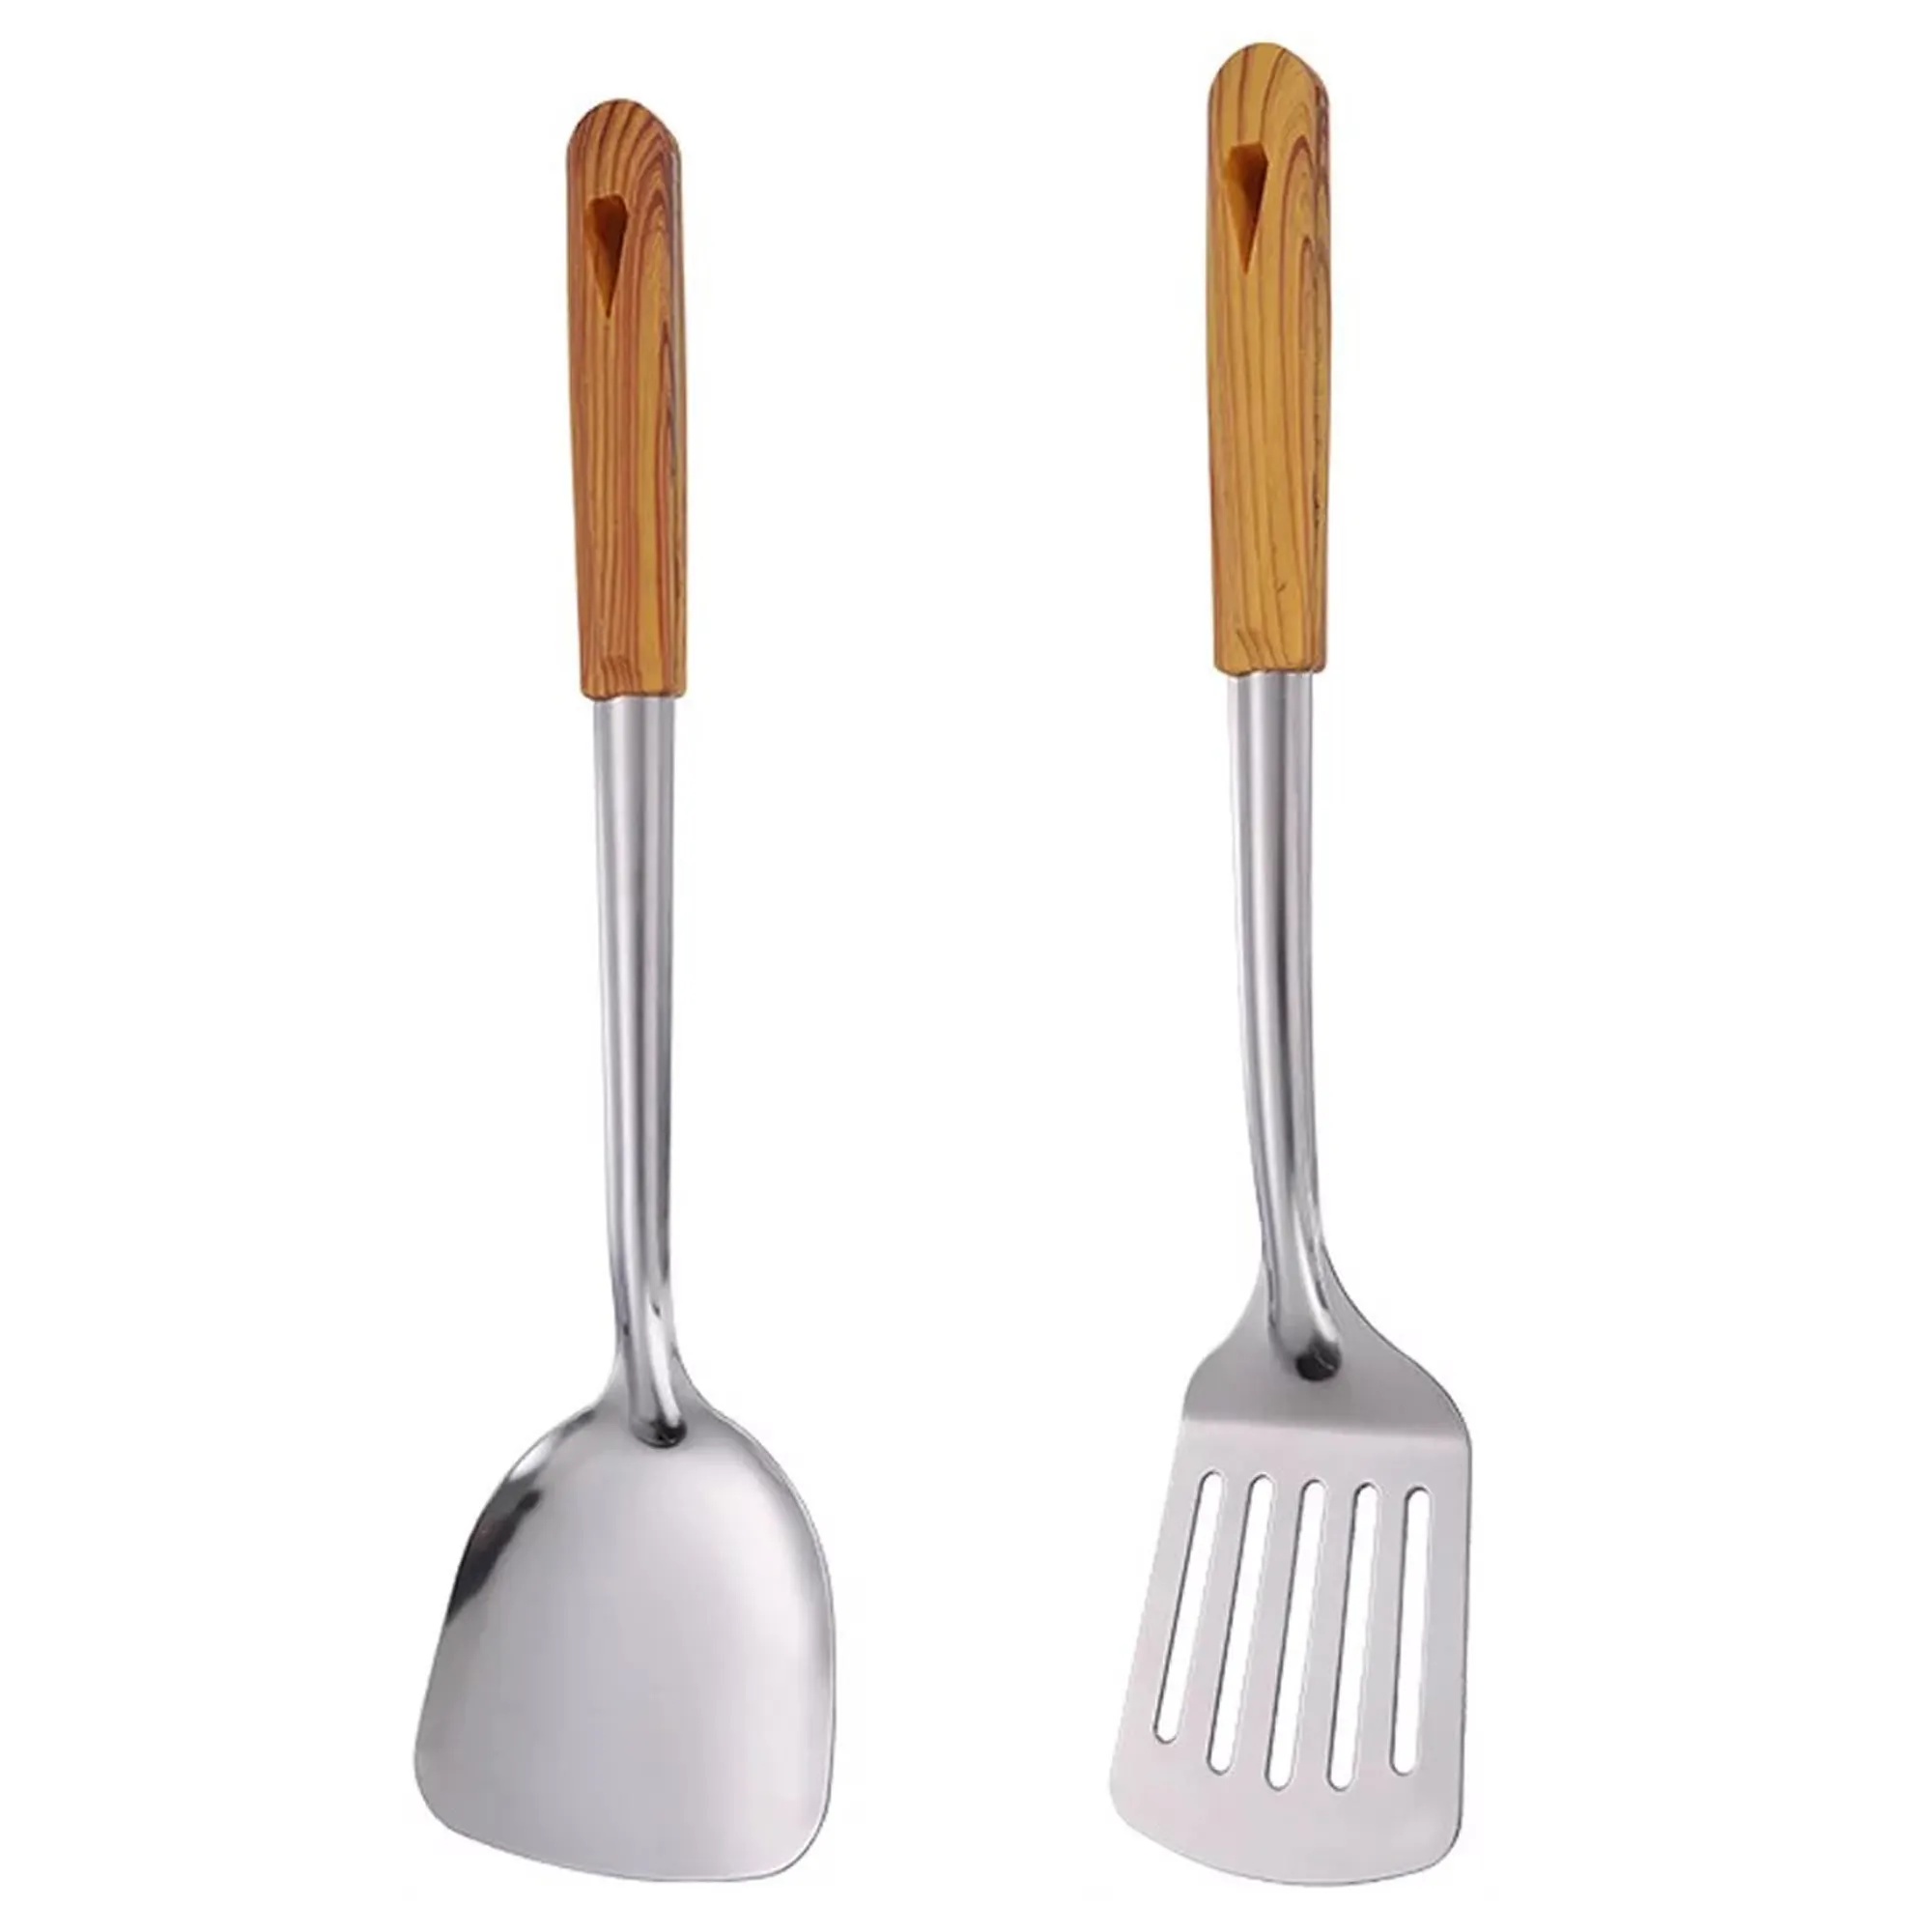 Bộ 2 nhà bếp spatulas đồ dùng/thực phẩm phục vụ và nấu ăn bằng thép không gỉ Spatula với tay cầm bằng gỗ